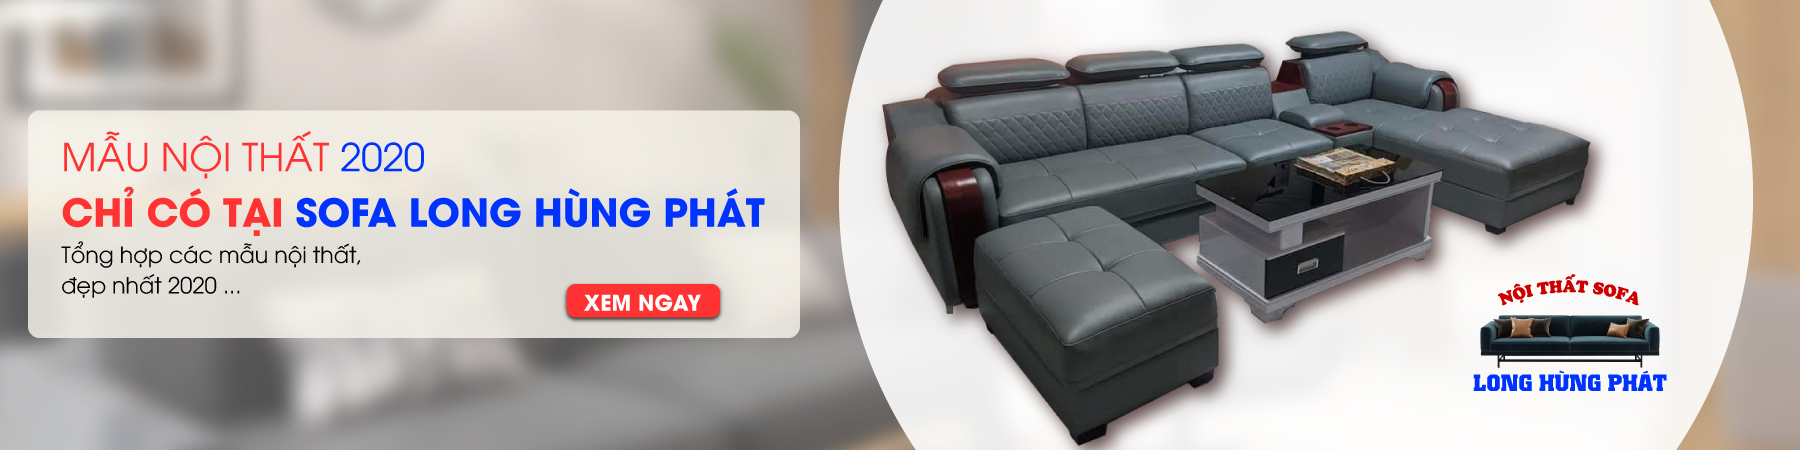 Mời bạn thả mắt vào chiếc sofa Long Hùng Phát với thiết kế đẹp mắt, đem lại cho không gian sống của bạn sự sang trọng và đầy ấn tượng.